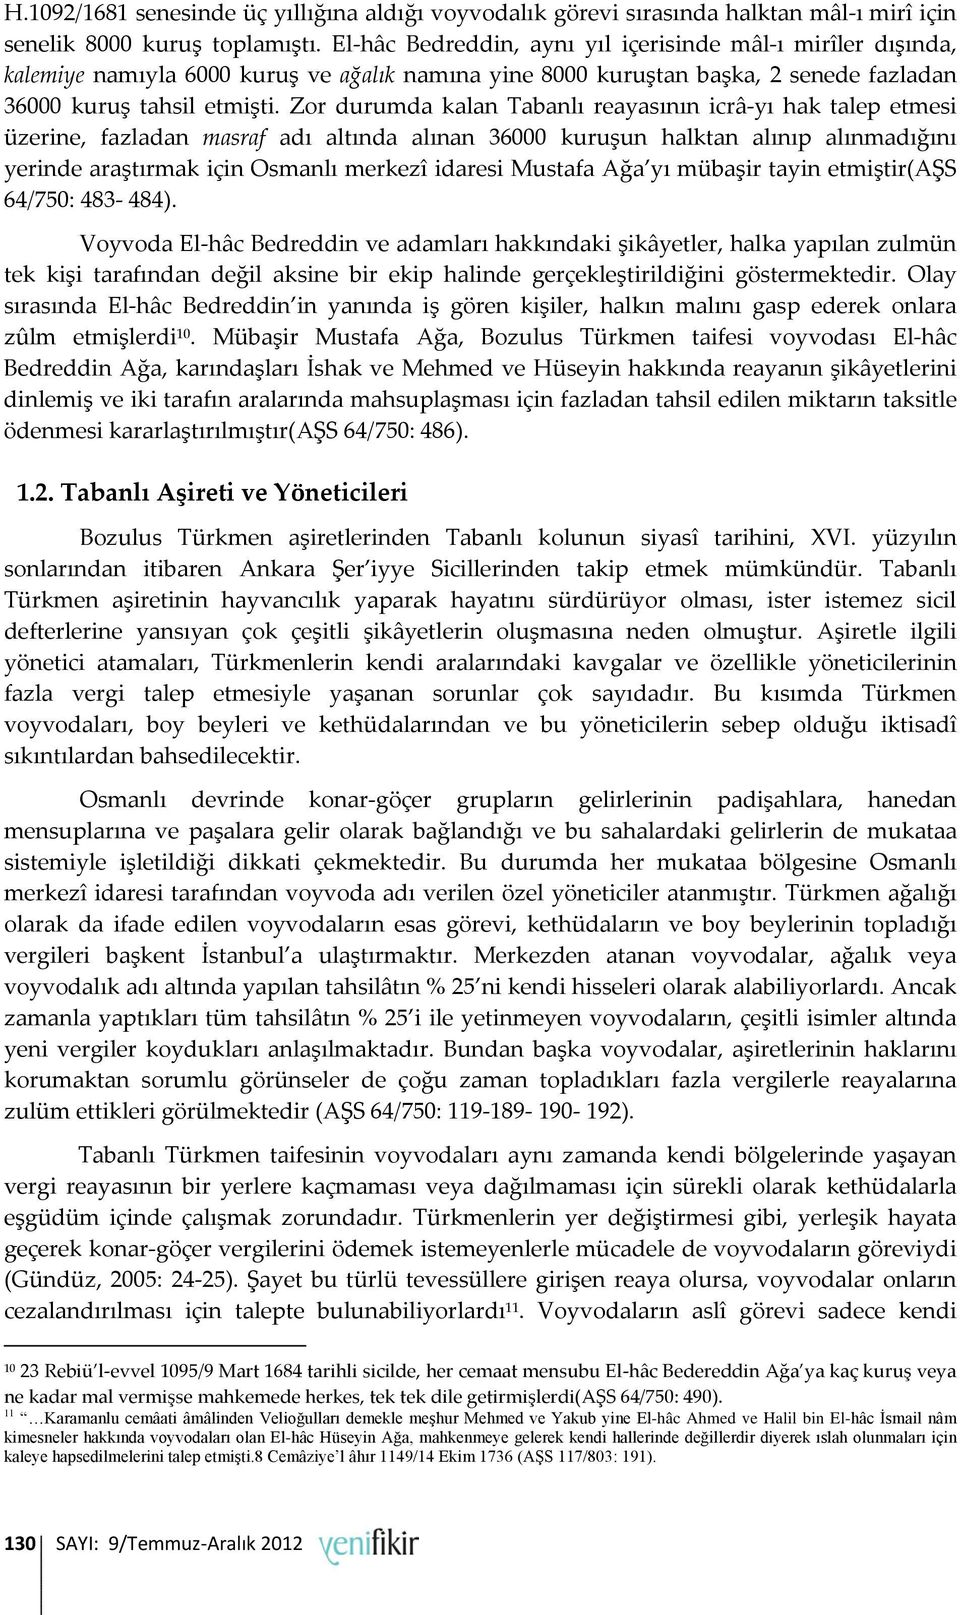 Zor durumda kalan Tabanlı reayasının icrâ-yı hak talep etmesi üzerine, fazladan masraf adı altında alınan 36000 kuruşun halktan alınıp alınmadığını yerinde araştırmak için Osmanlı merkezî idaresi